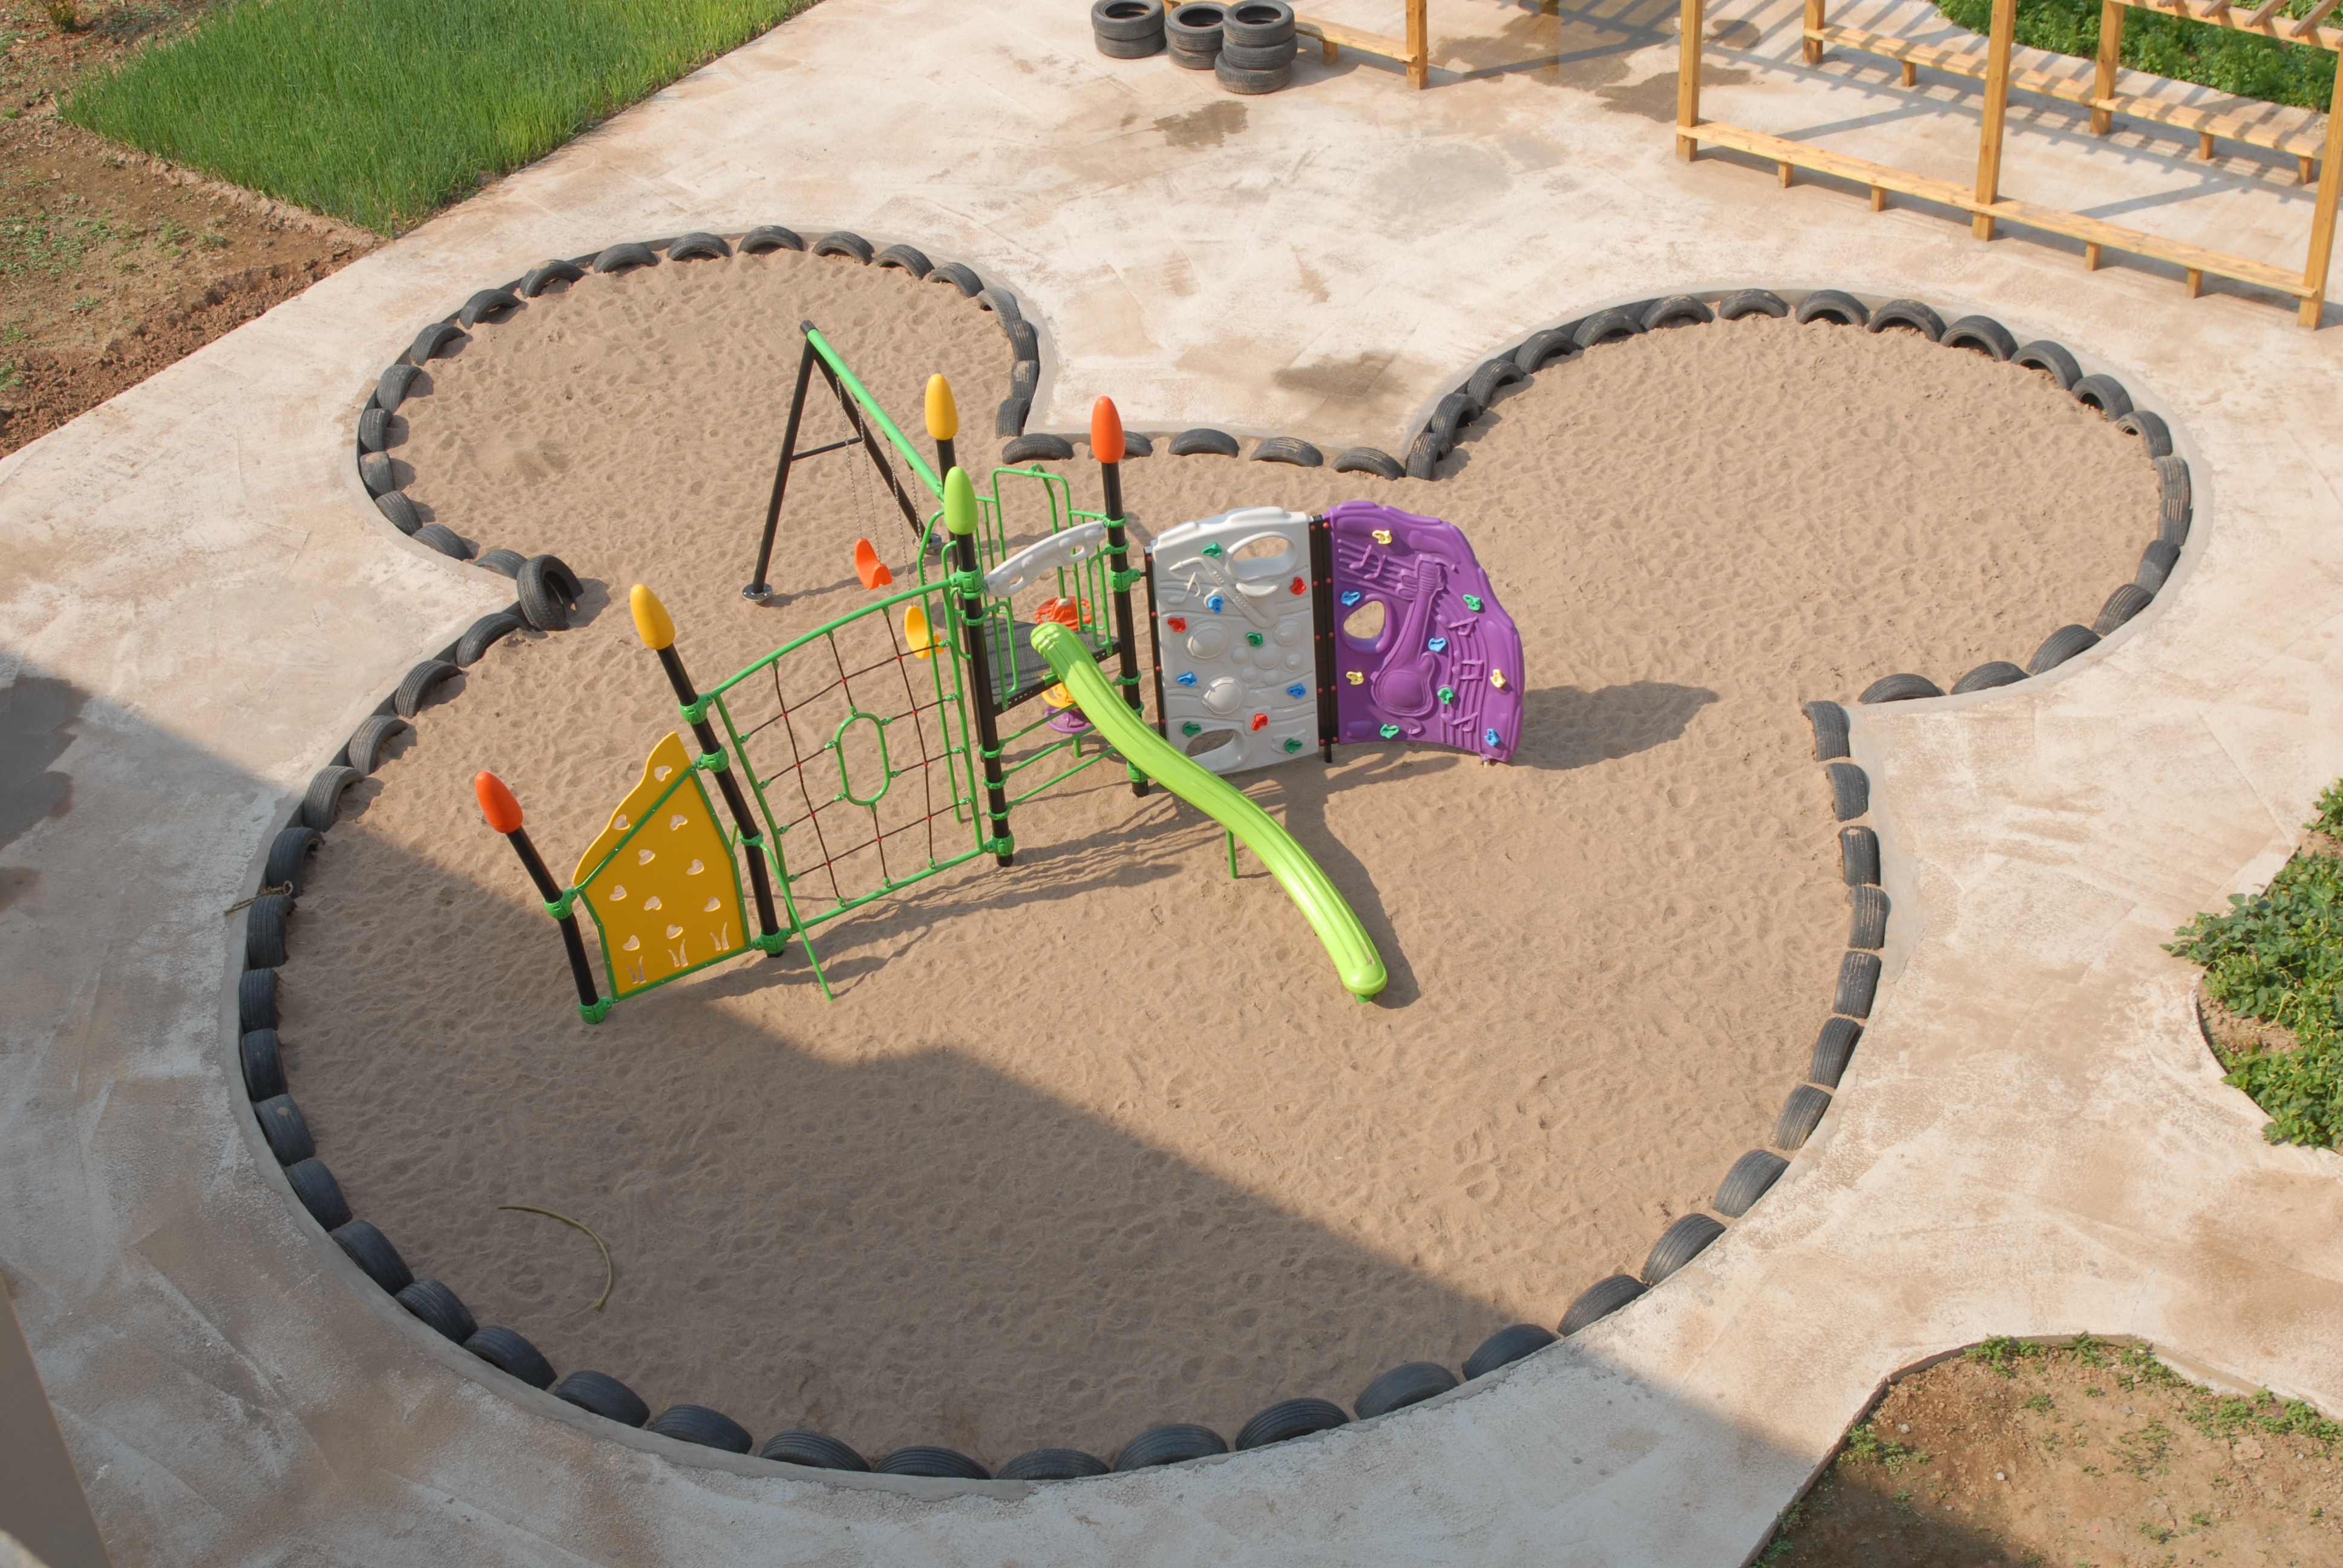 沙池玩具幼儿园自制的图片